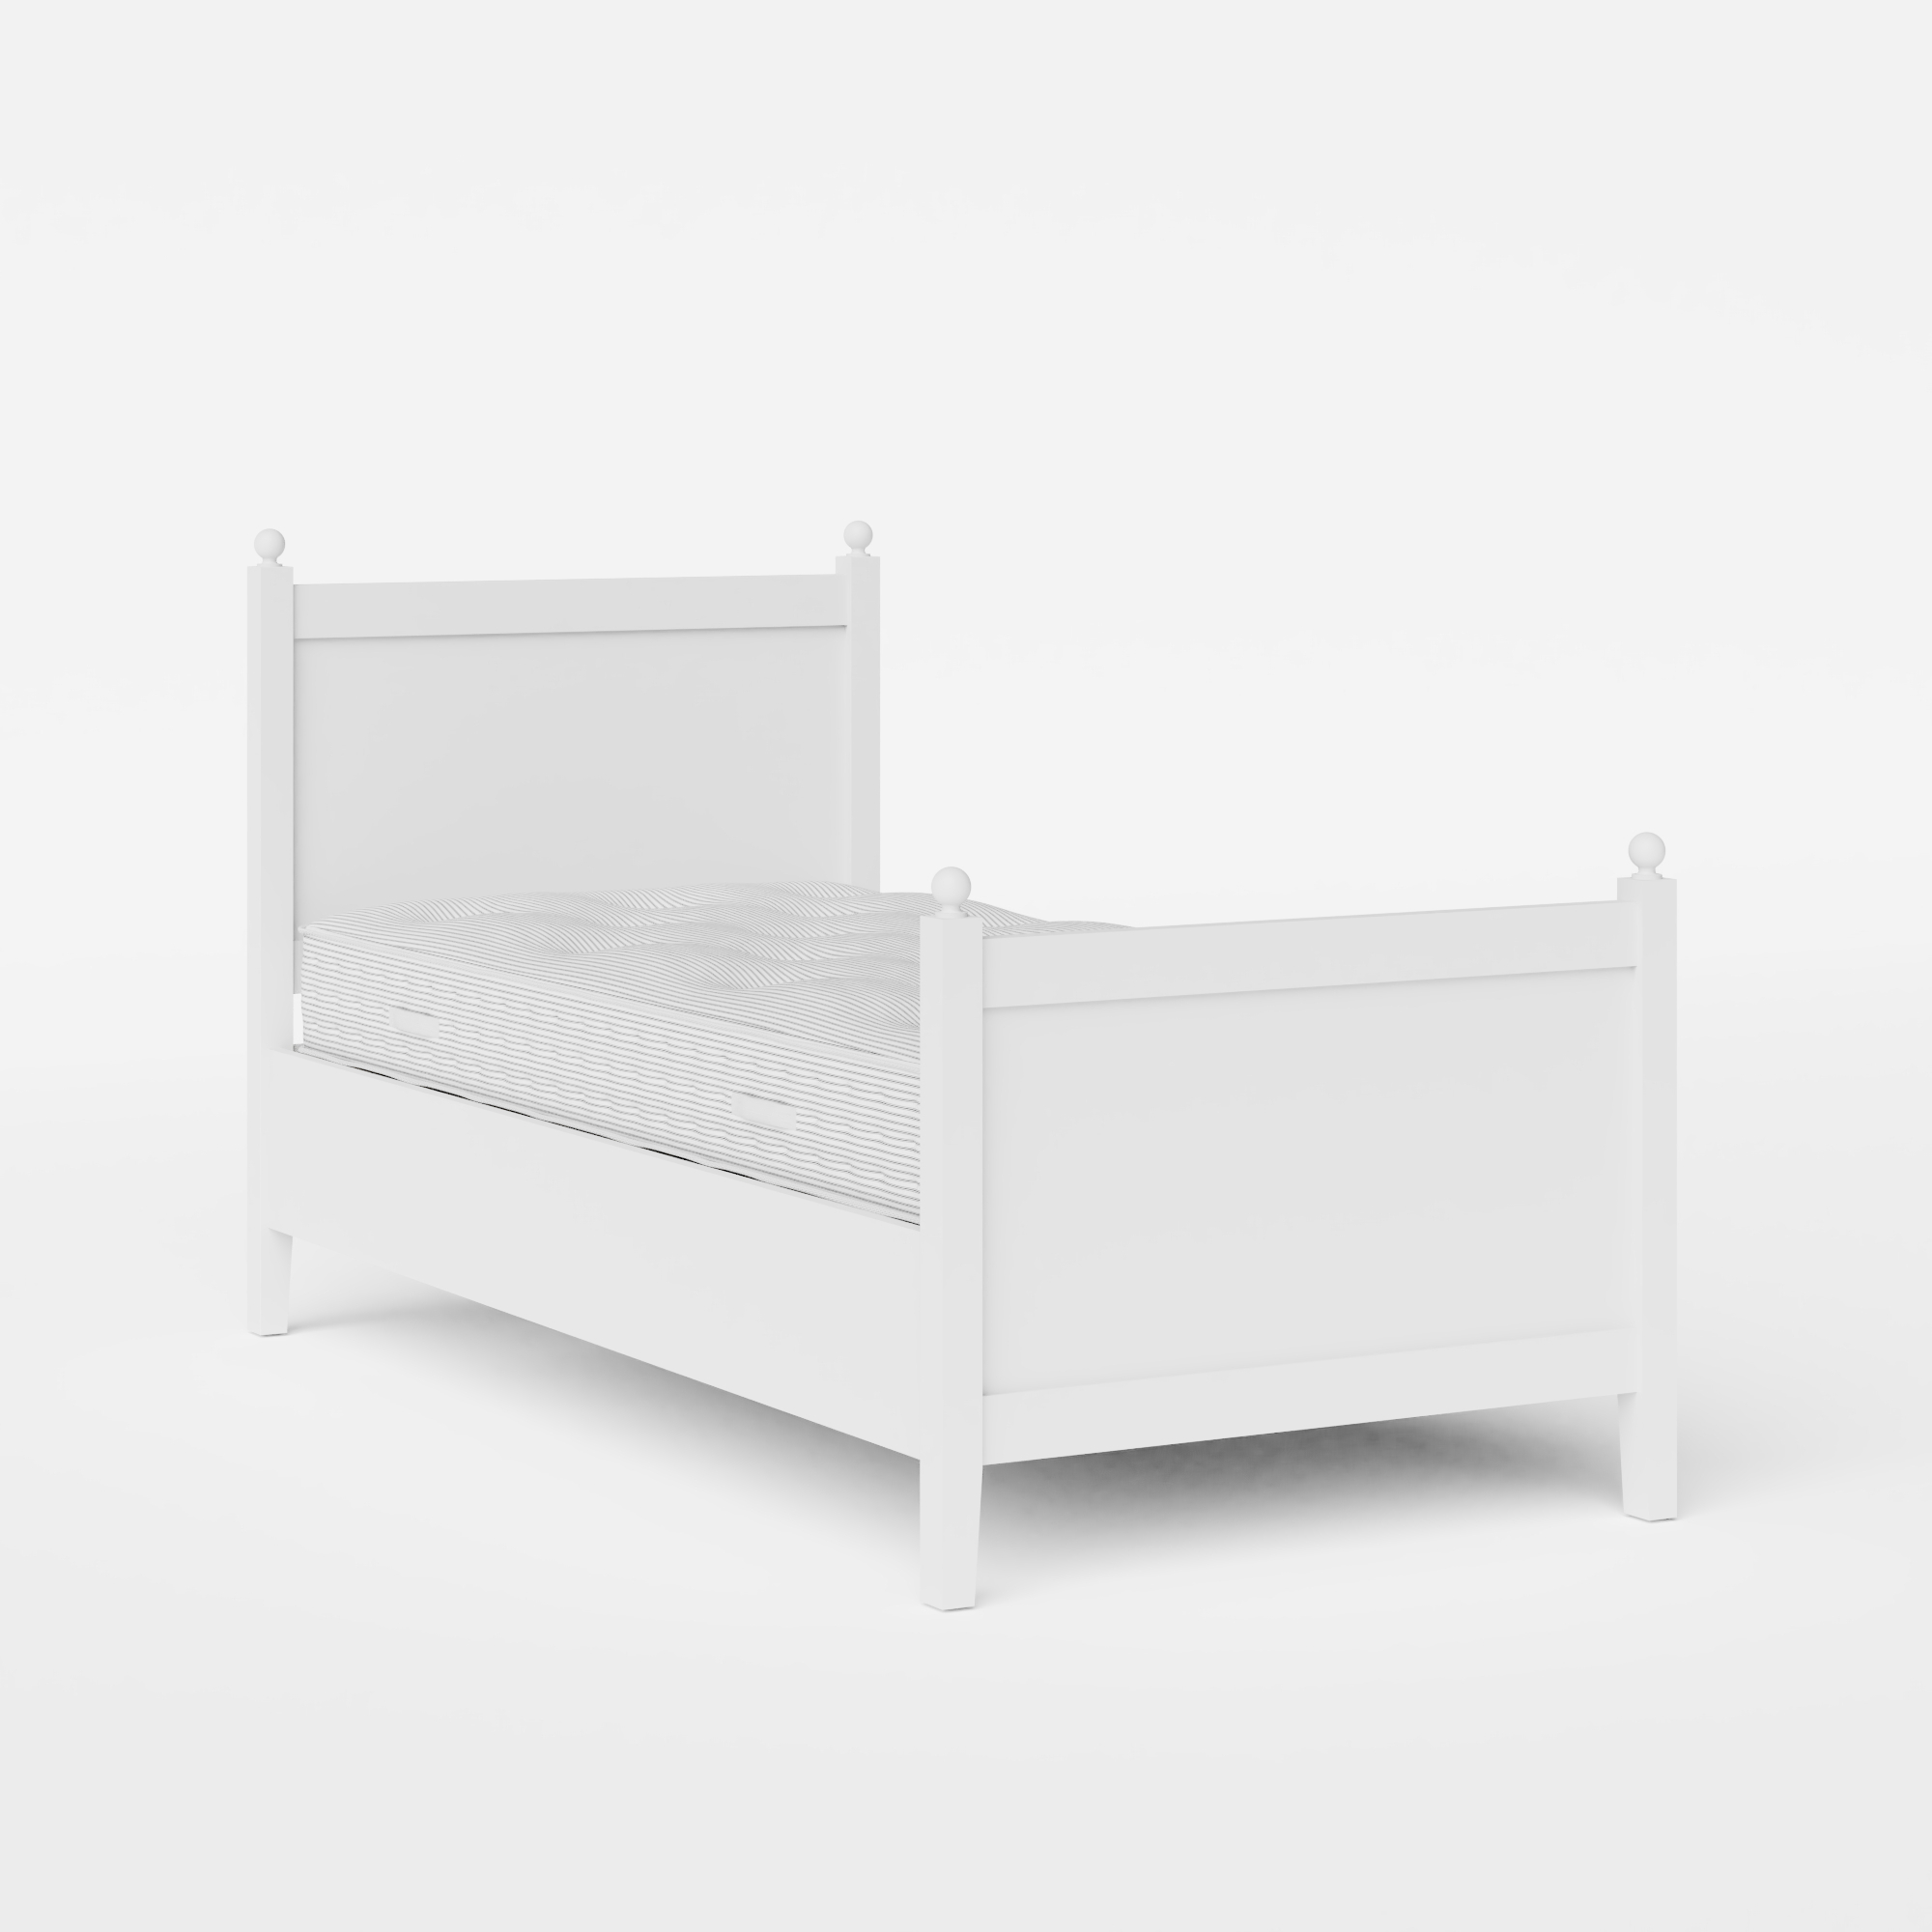 Marbella Painted cama individual de madera pintada en blanco con colchón